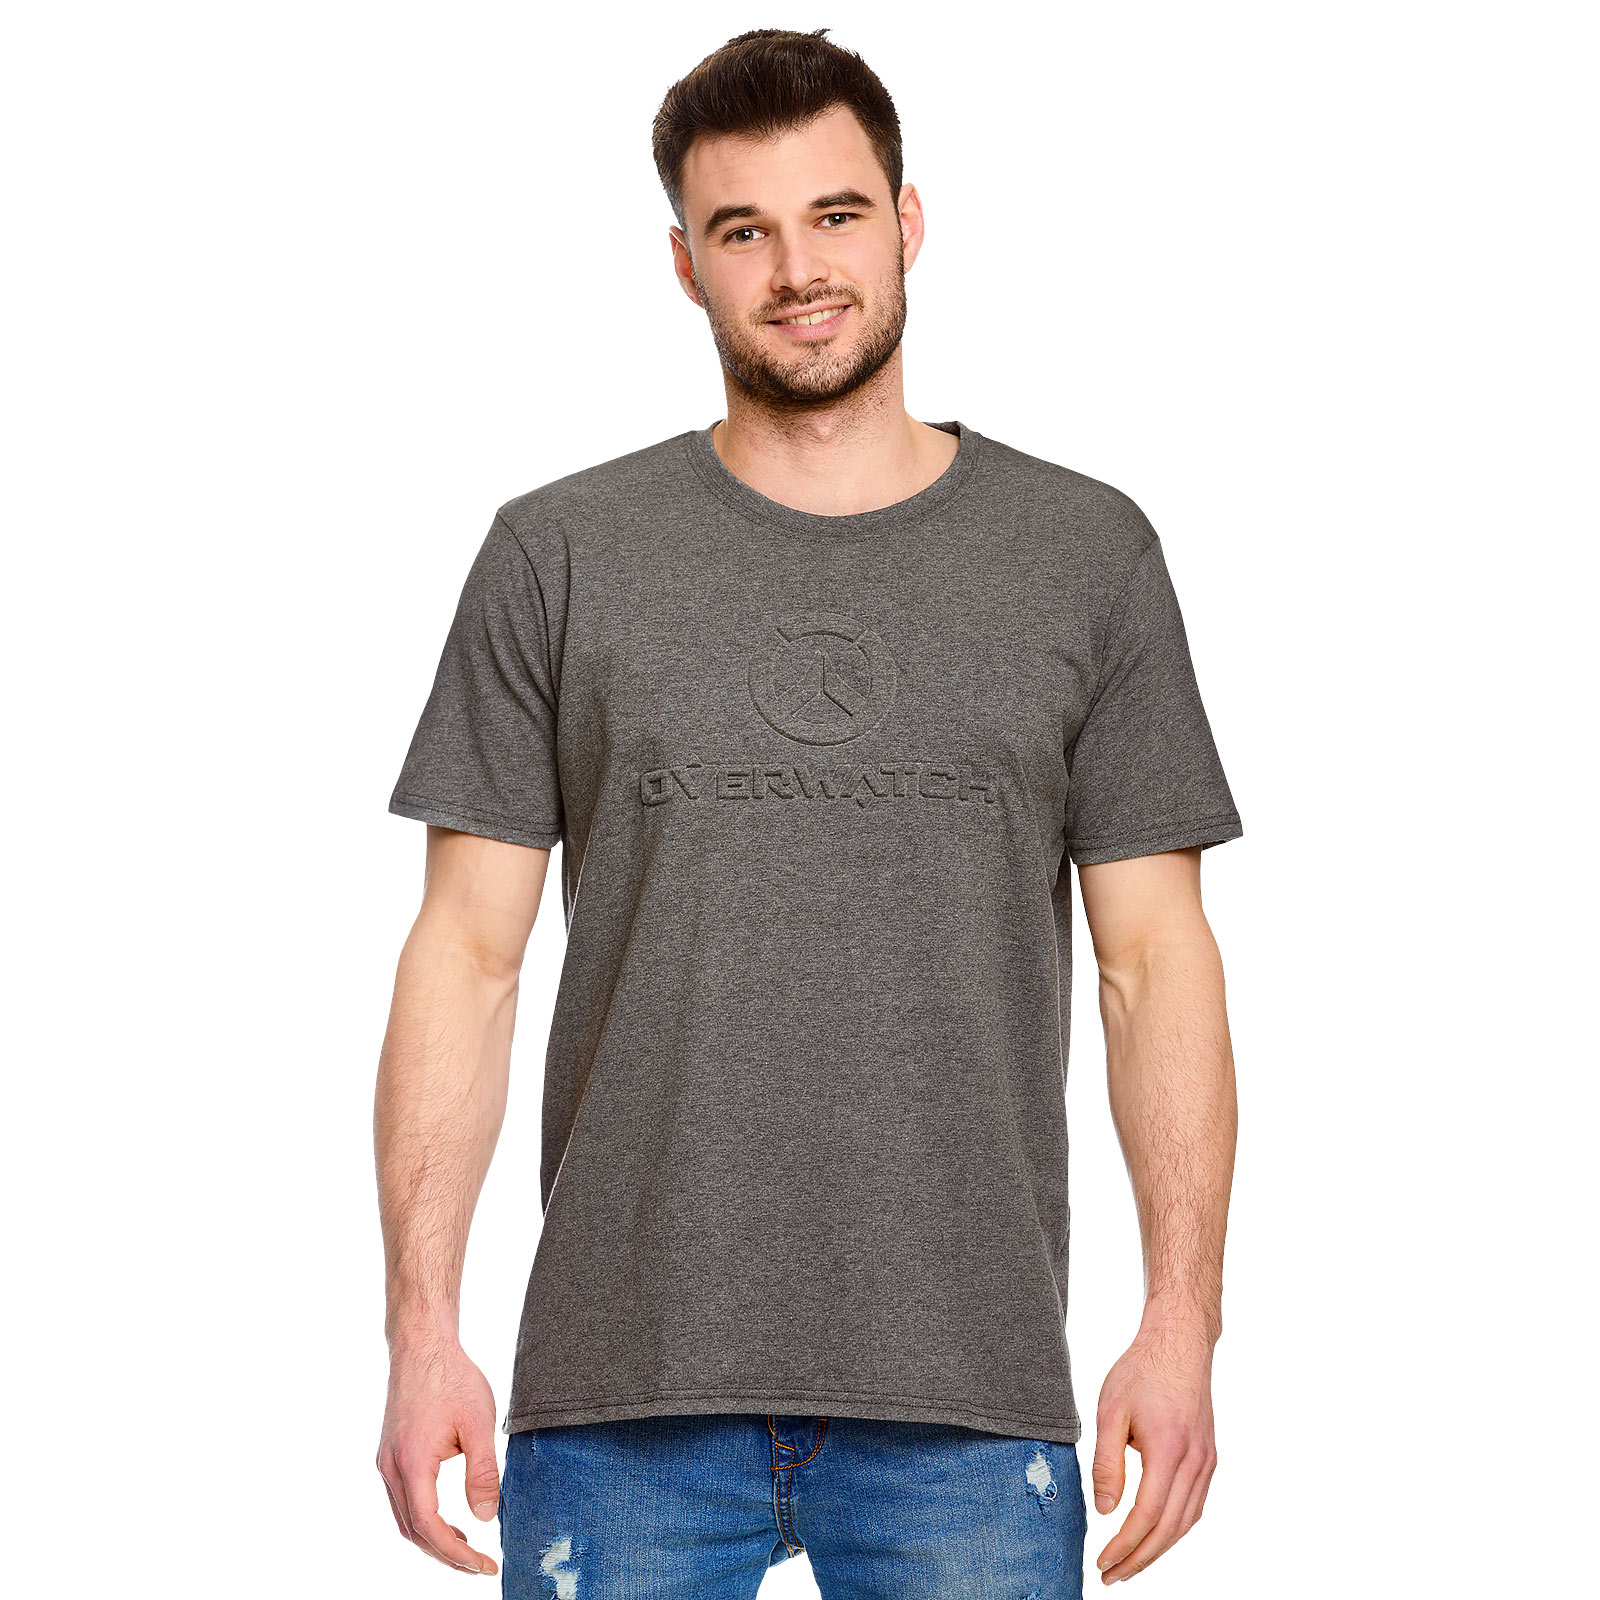 Overwatch - T-shirt logo 3D gris